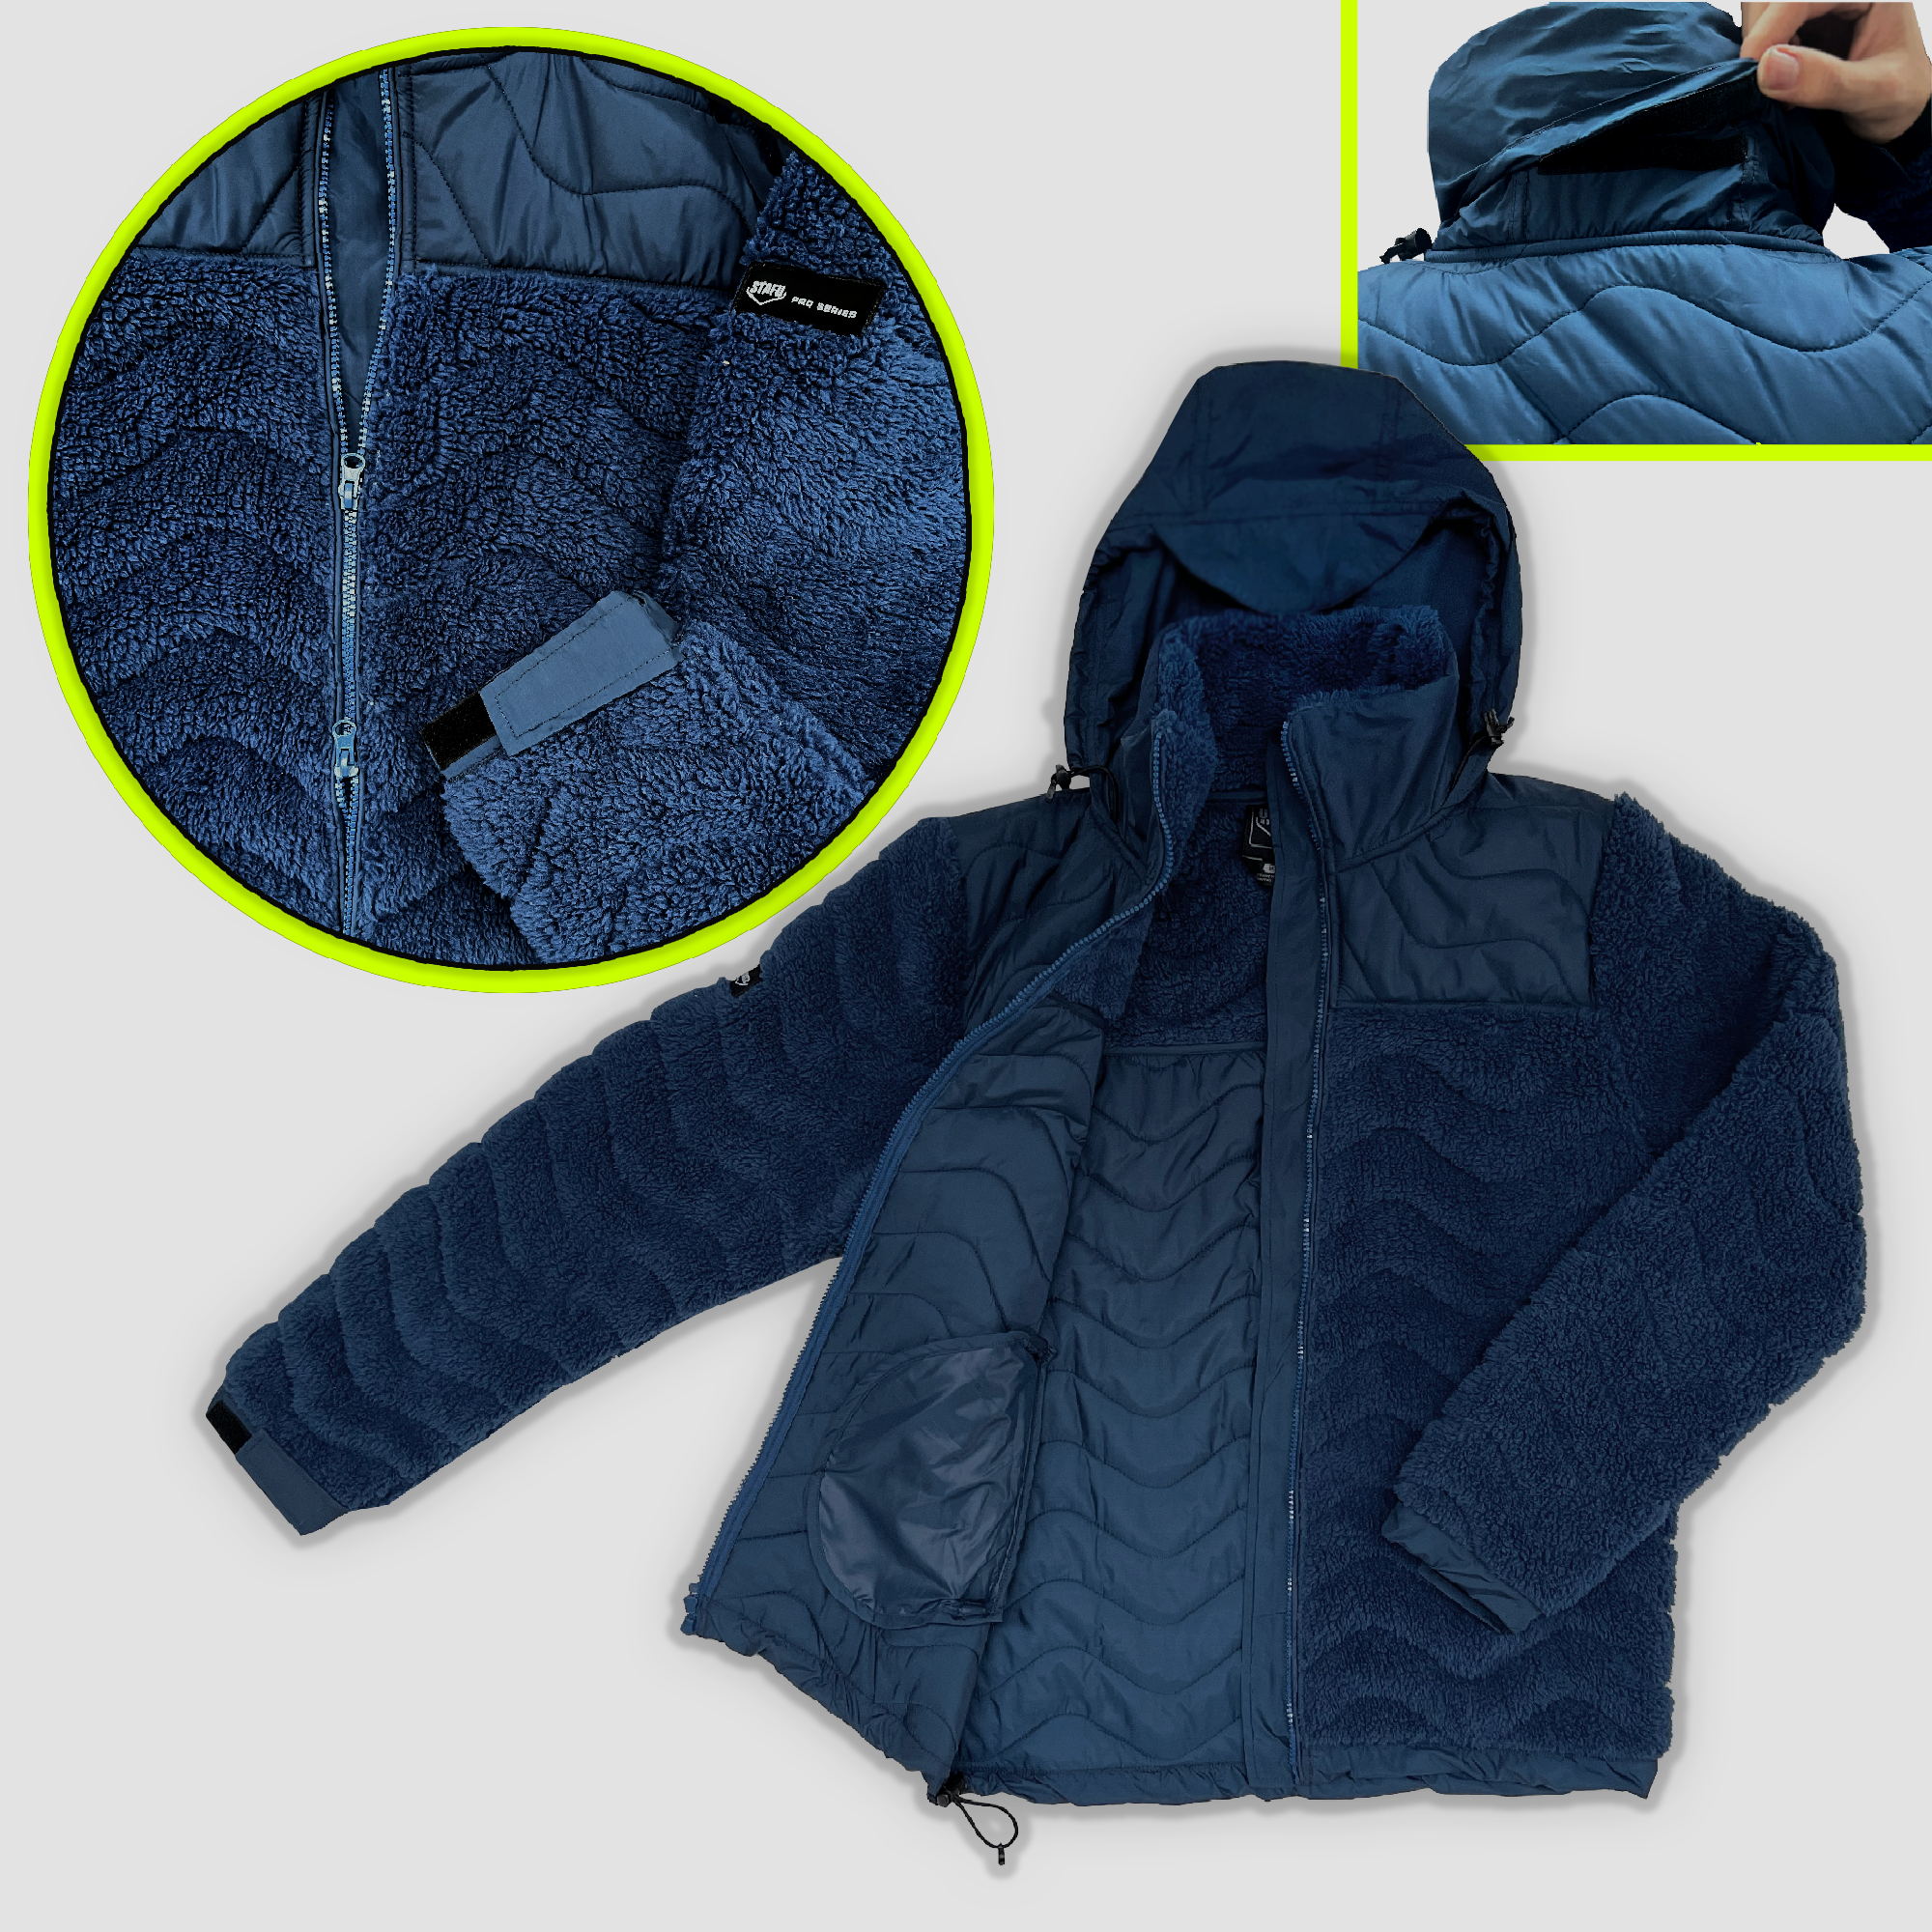 Inuk Men's Sherpa Fleece Blue Jacket